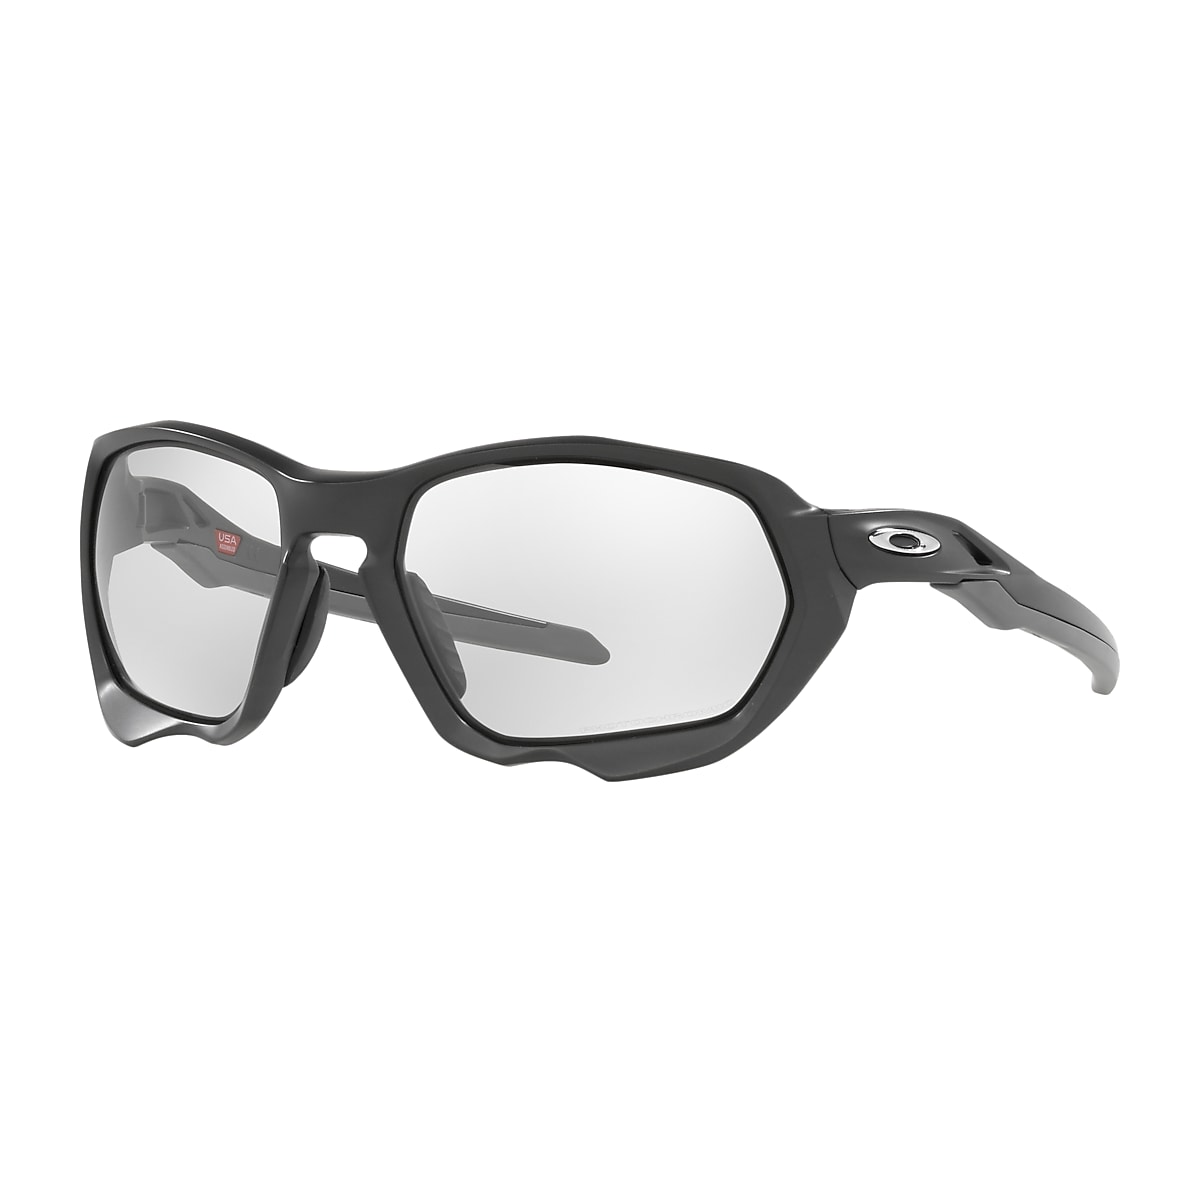 Trofast Til ære for så meget Plazma Clear to Black Iridium Photochromic Lenses, Matte Carbon Frame  Sunglasses | Oakley® US